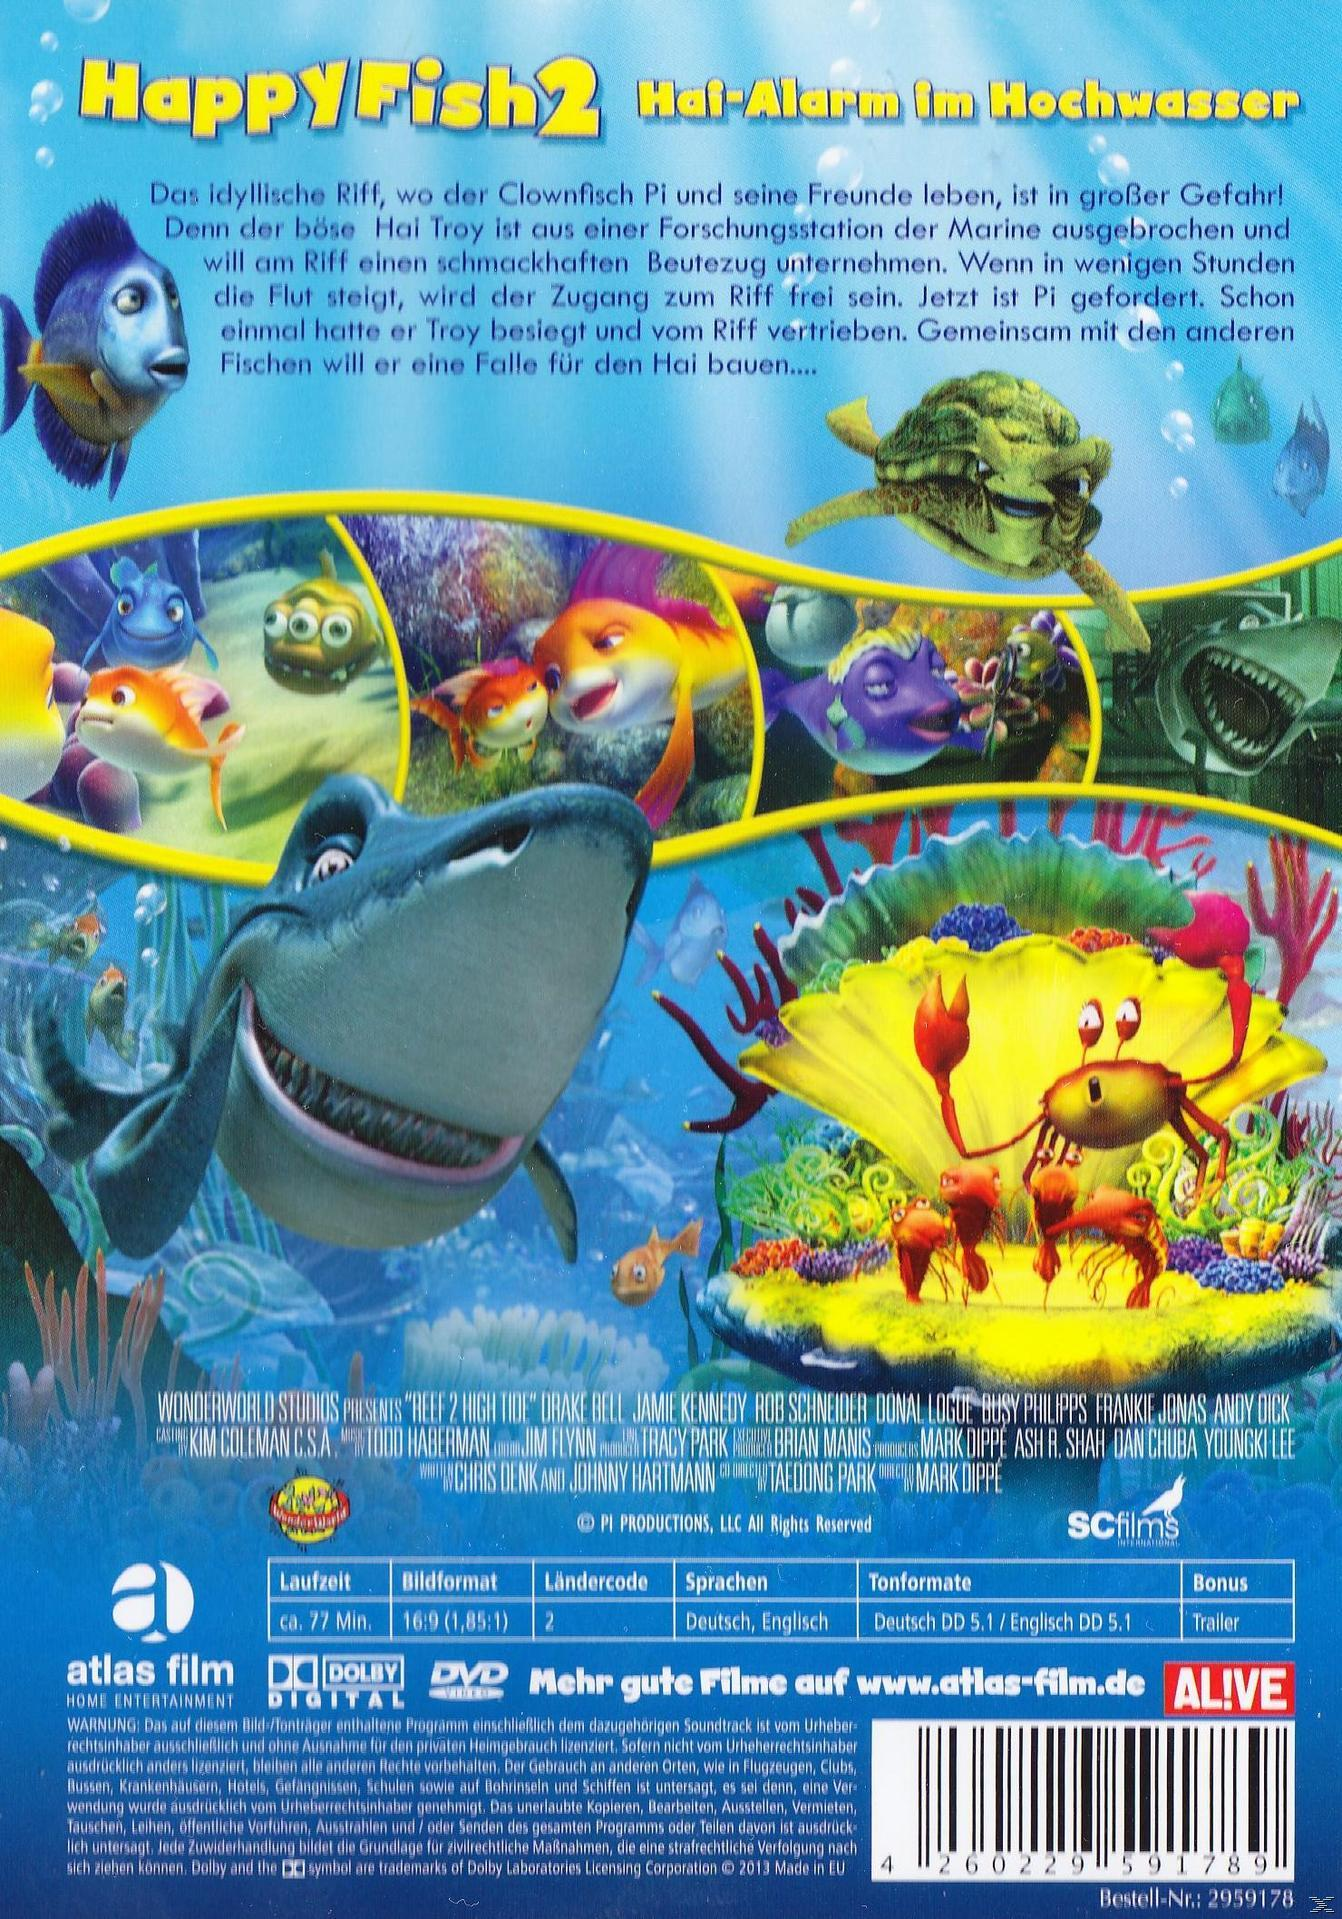 Happy Fish 2 - Hai-Alarm DVD Hochwasser im